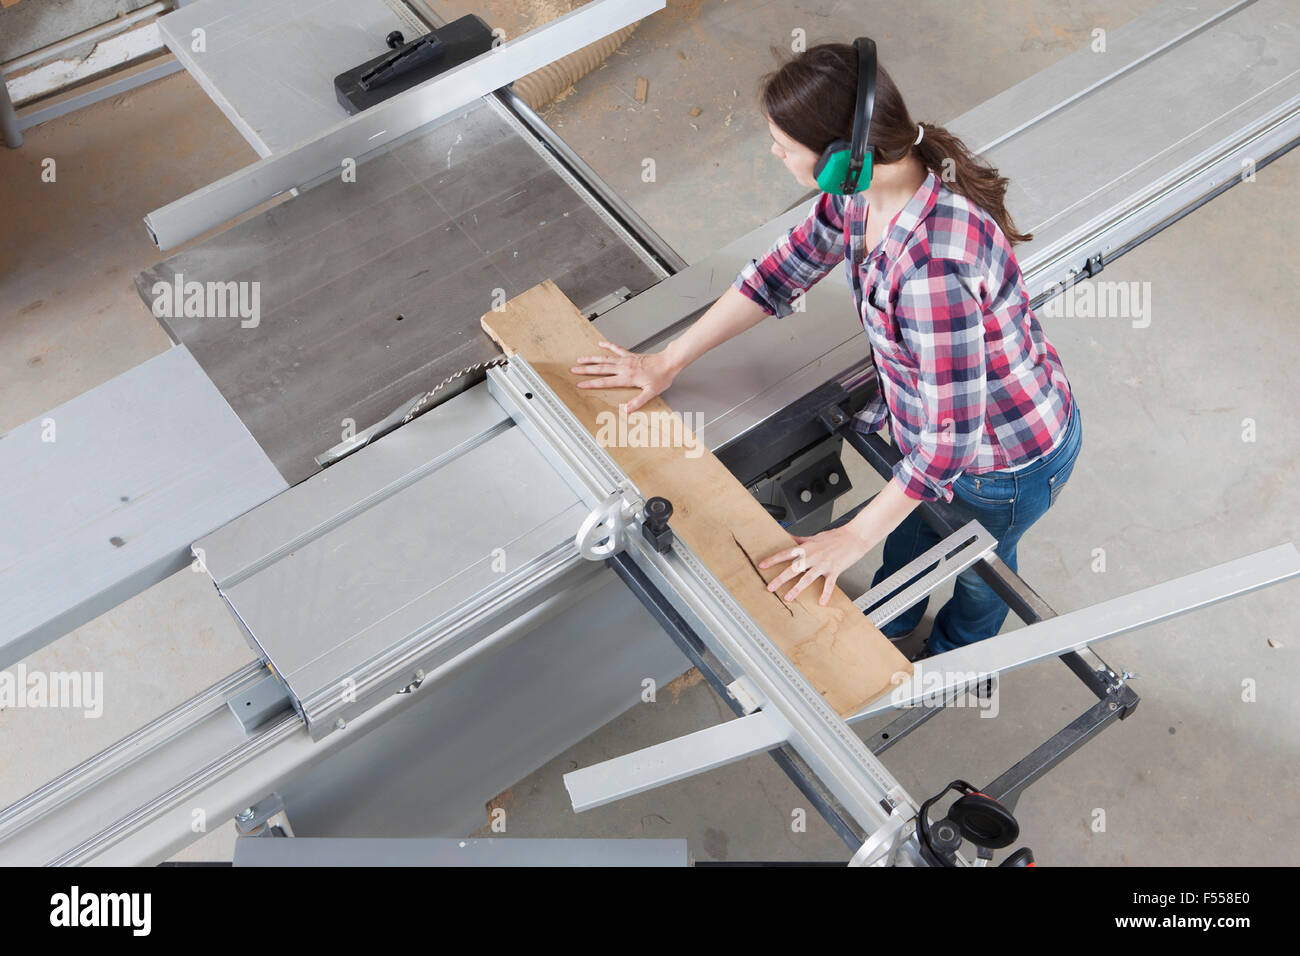 High angle view of female Carpenter à l'aide d'une scie sur table coulissante en atelier Banque D'Images